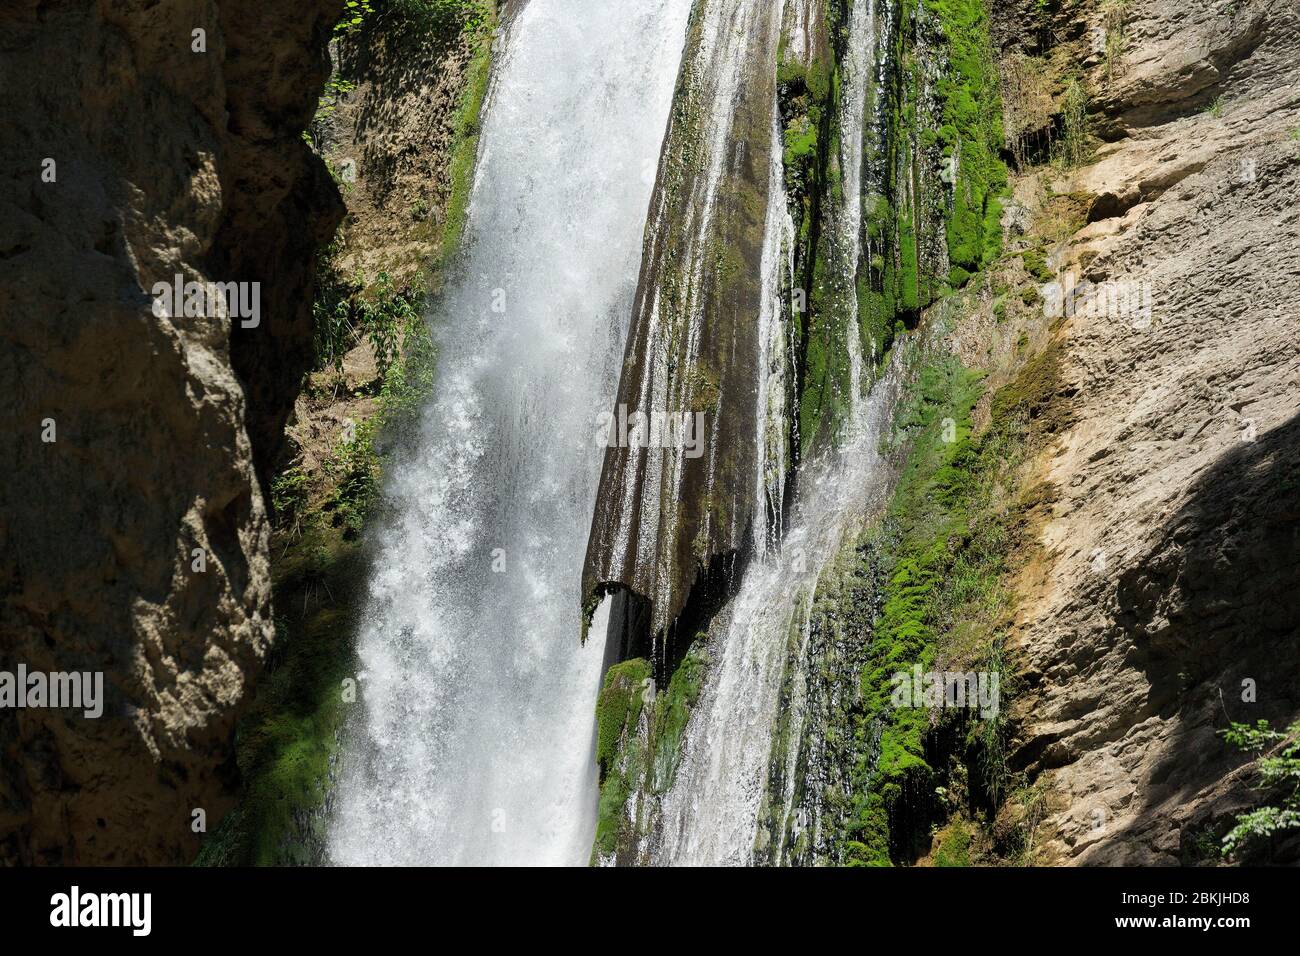 France, Drome, Vercors Regional Natural Park, Plan de Baix, La Druise waterfall, La Gervanne river Stock Photo